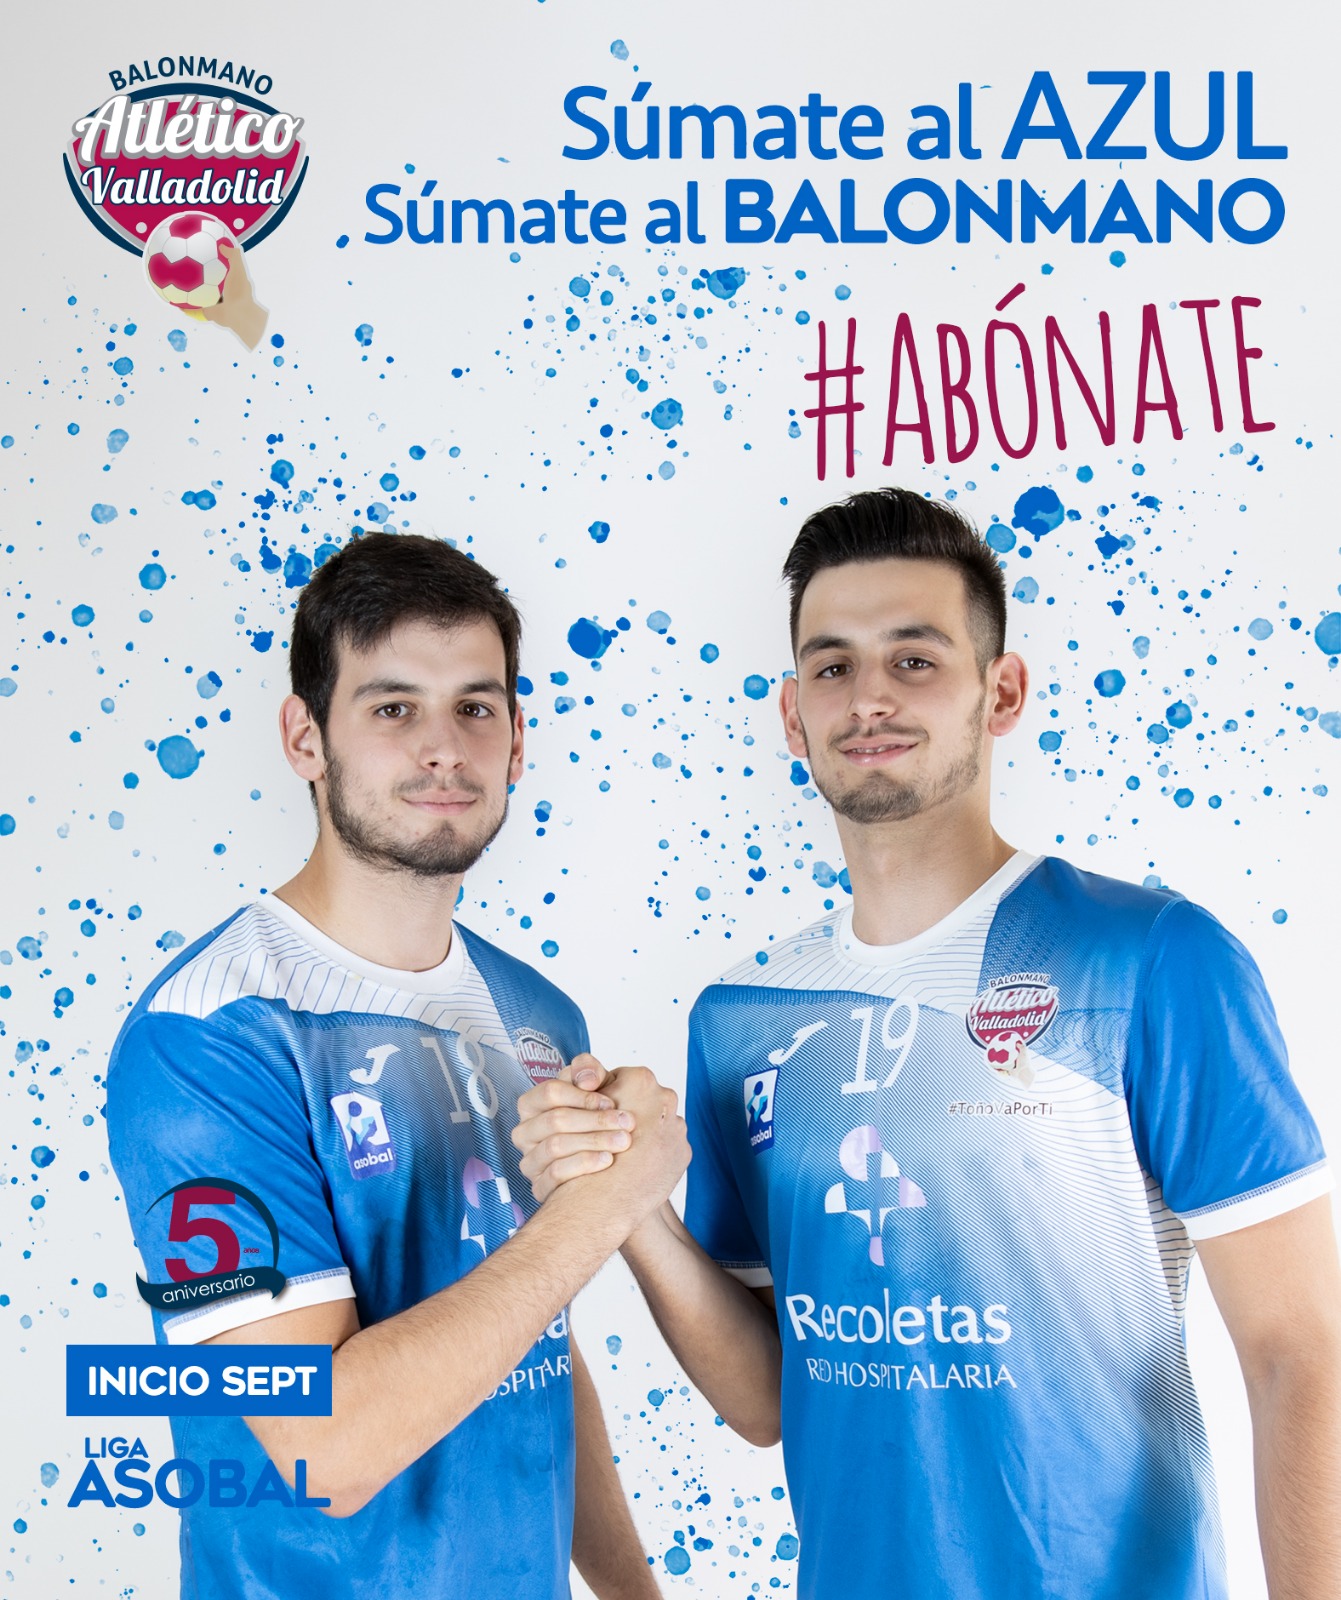 ¡Súmate al azul’, súmate al balonmano con el Recoletas Atlético Valladolid | Galería 14 / 28